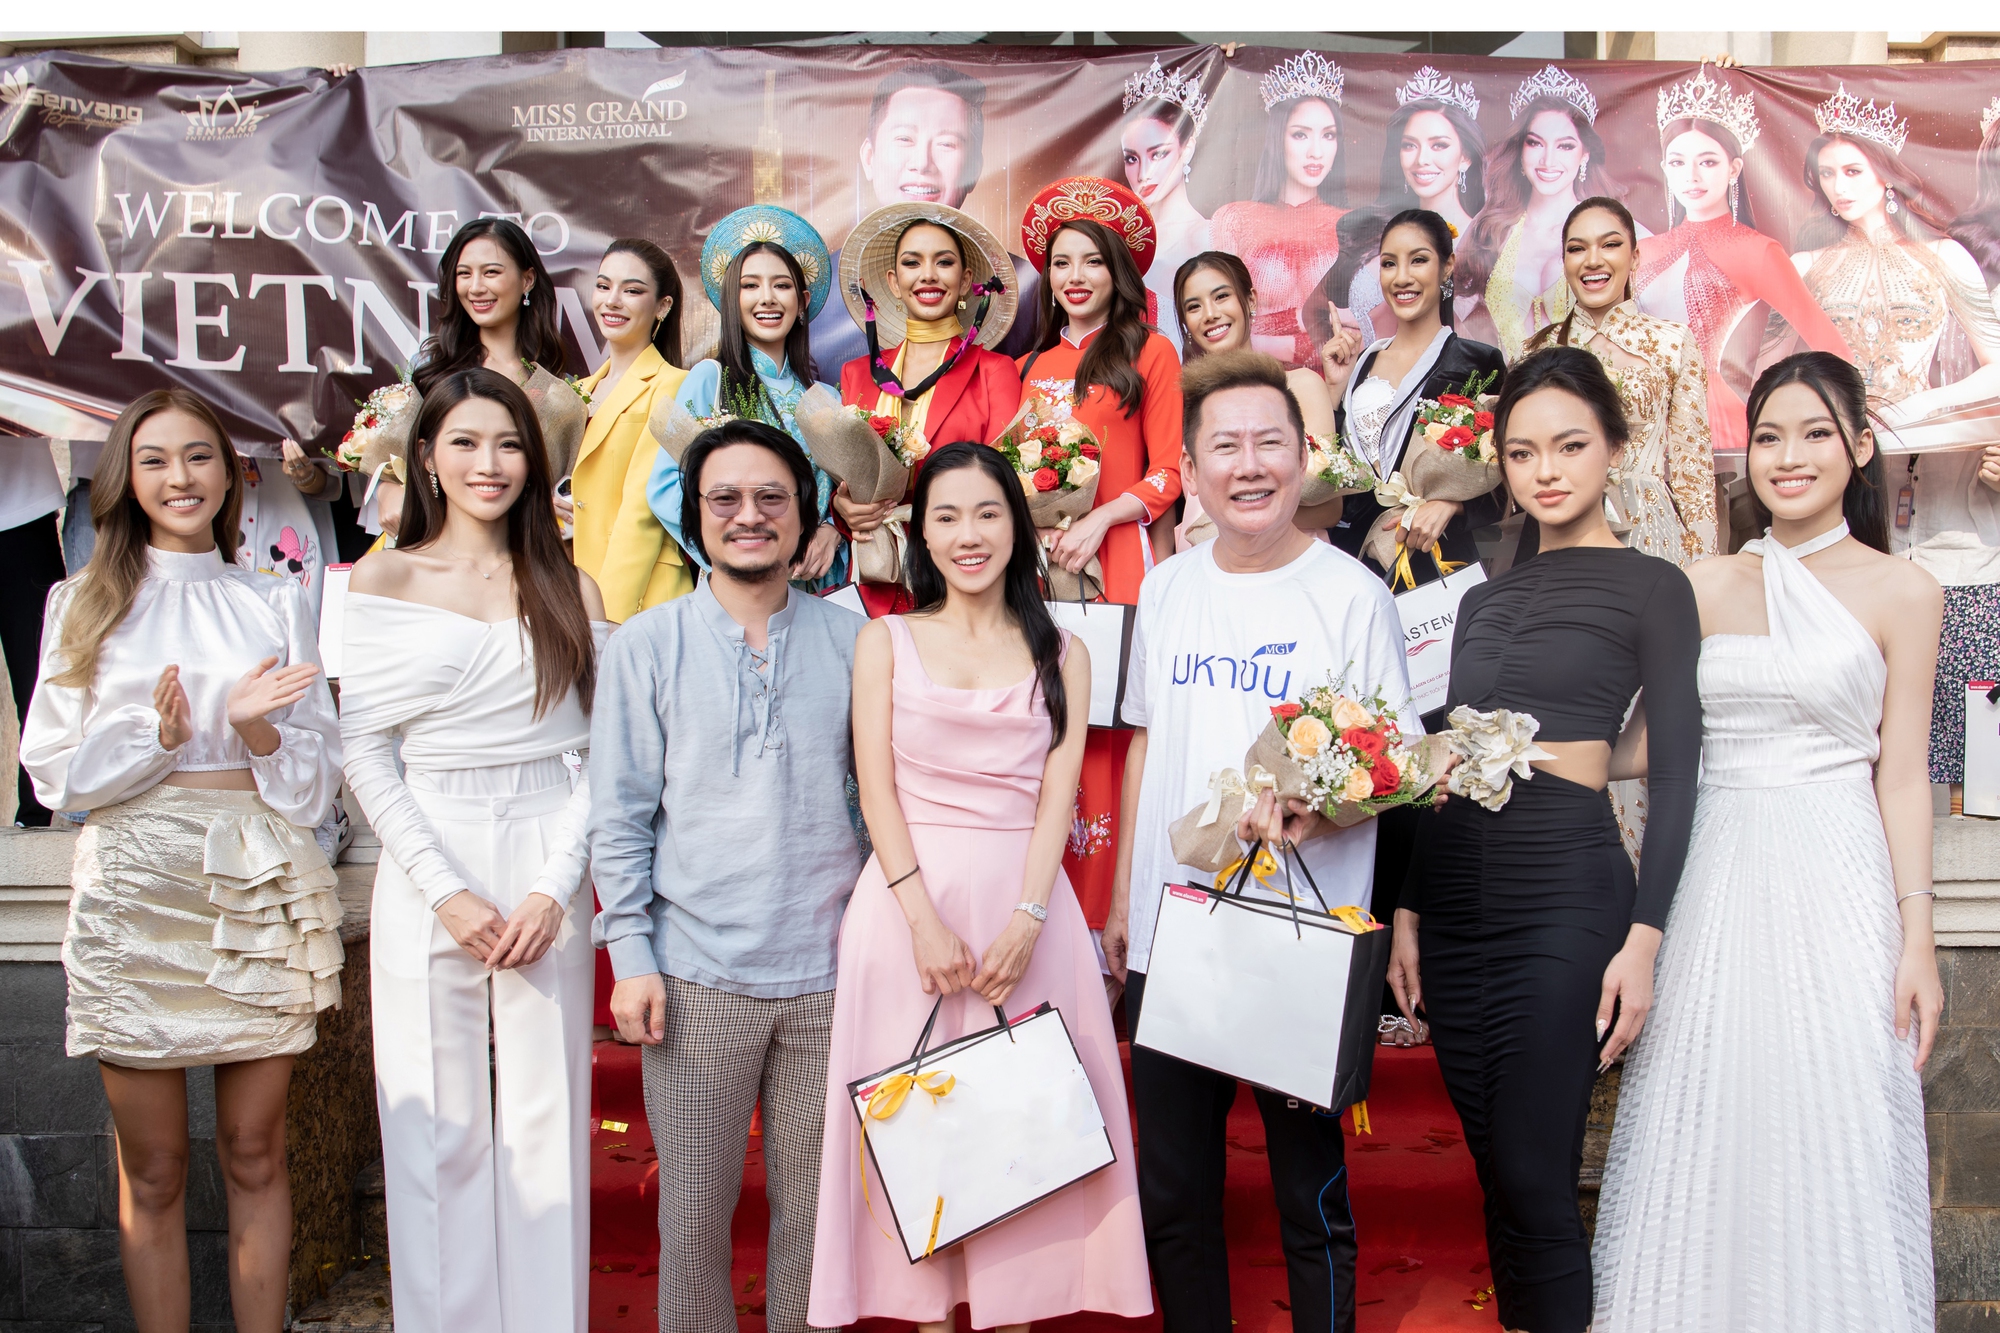 Hoa hậu Thùy Tiên, Thiên Ân vắng mặt trong buổi đón chủ tịch Miss Grand International - Ảnh 5.